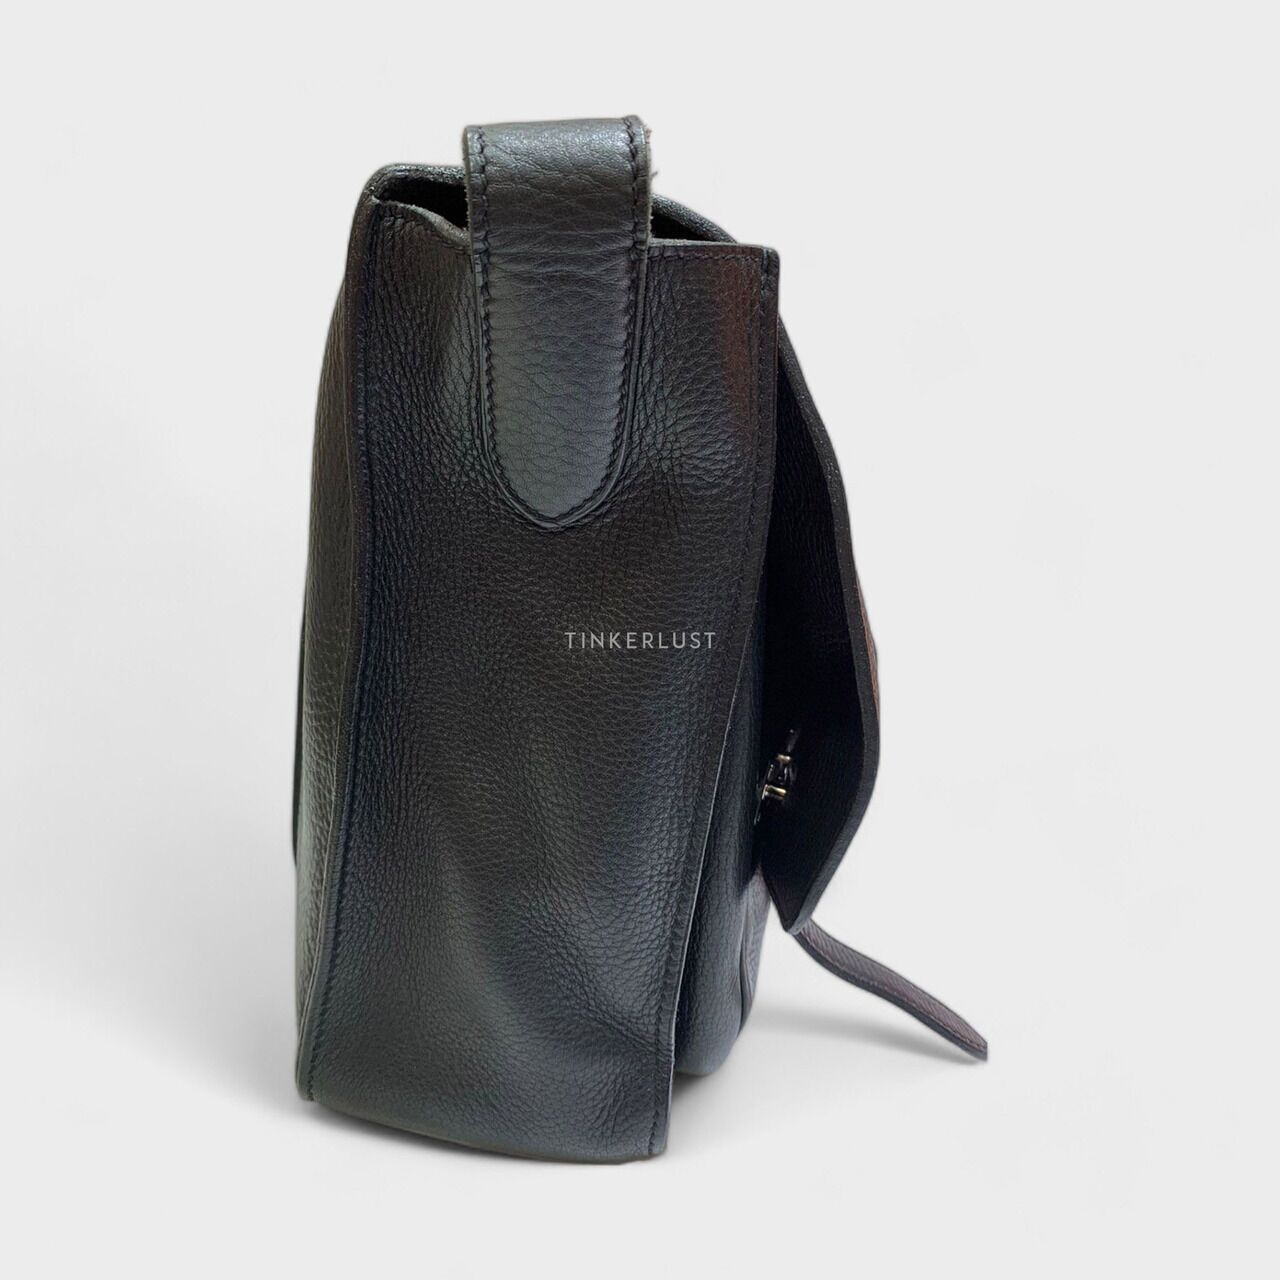 Hermes Steve Caporal Messenger Clemence Leather Black SHW #L Square 2008 Sling Bag